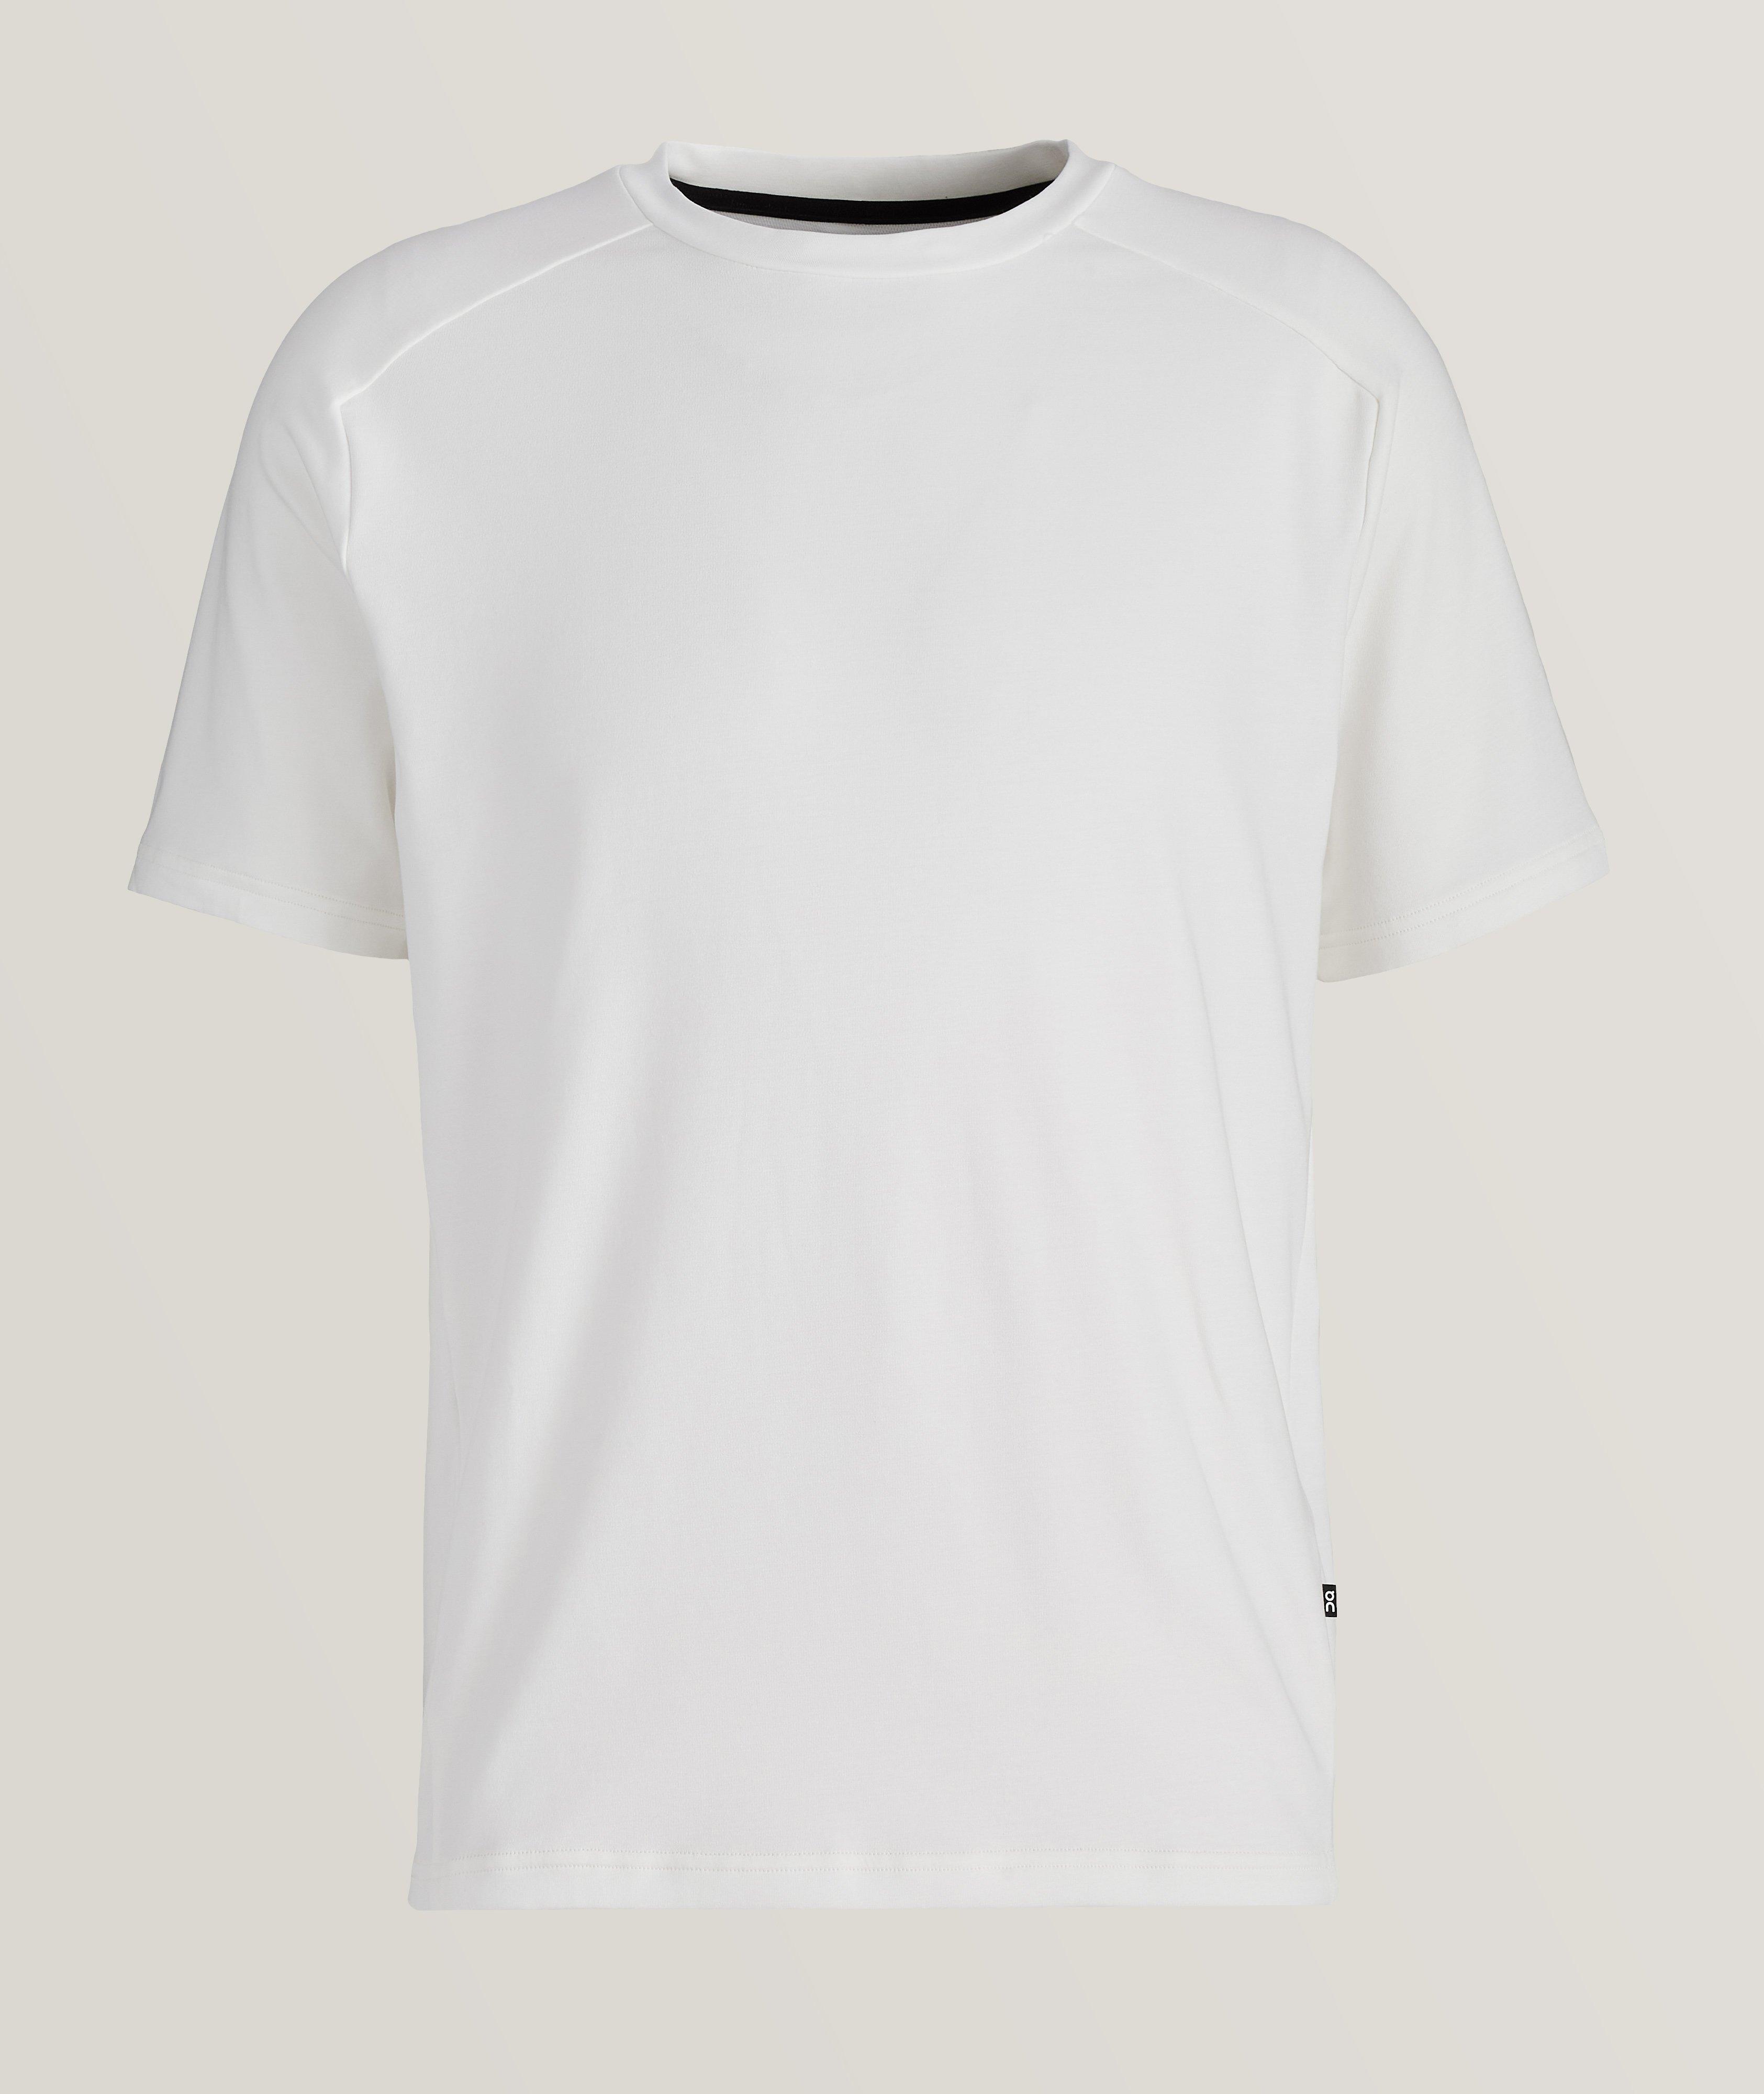 Stretch-Cotton Blend Focus T-Shirt image 0